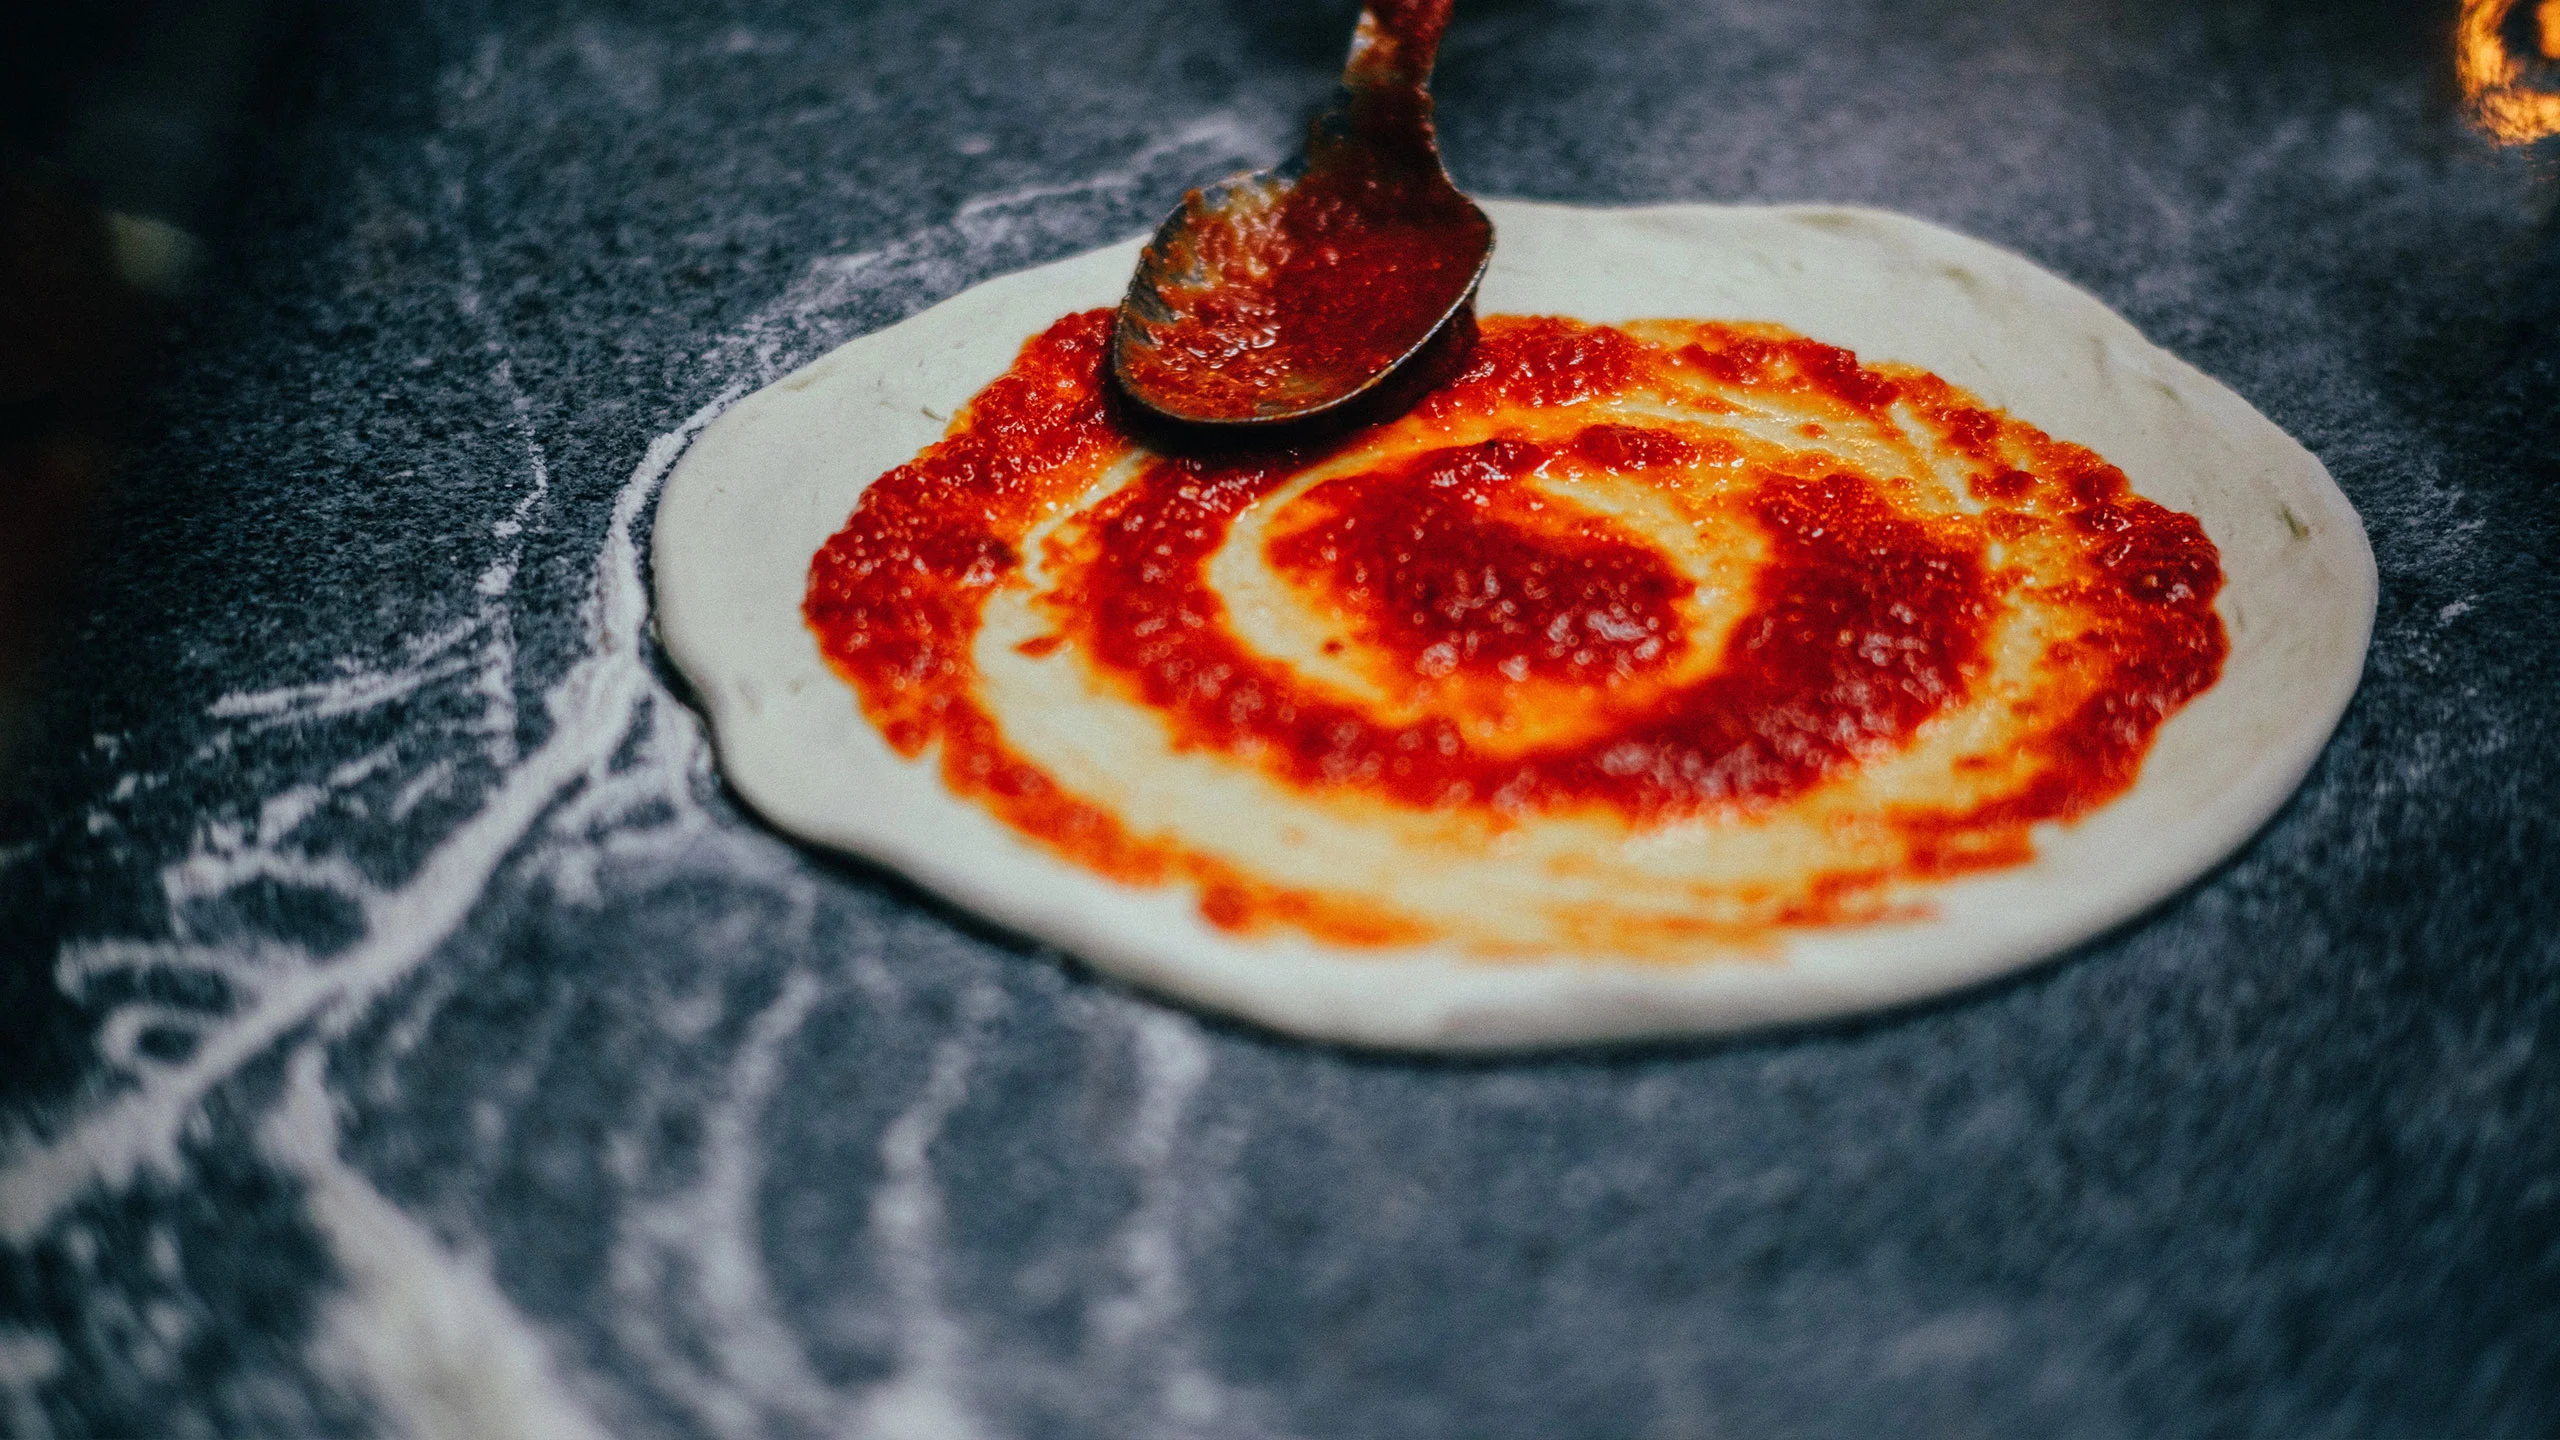 ¿Quieres hacer pizza en casa? Tenemos la receta para una salsa perfecta